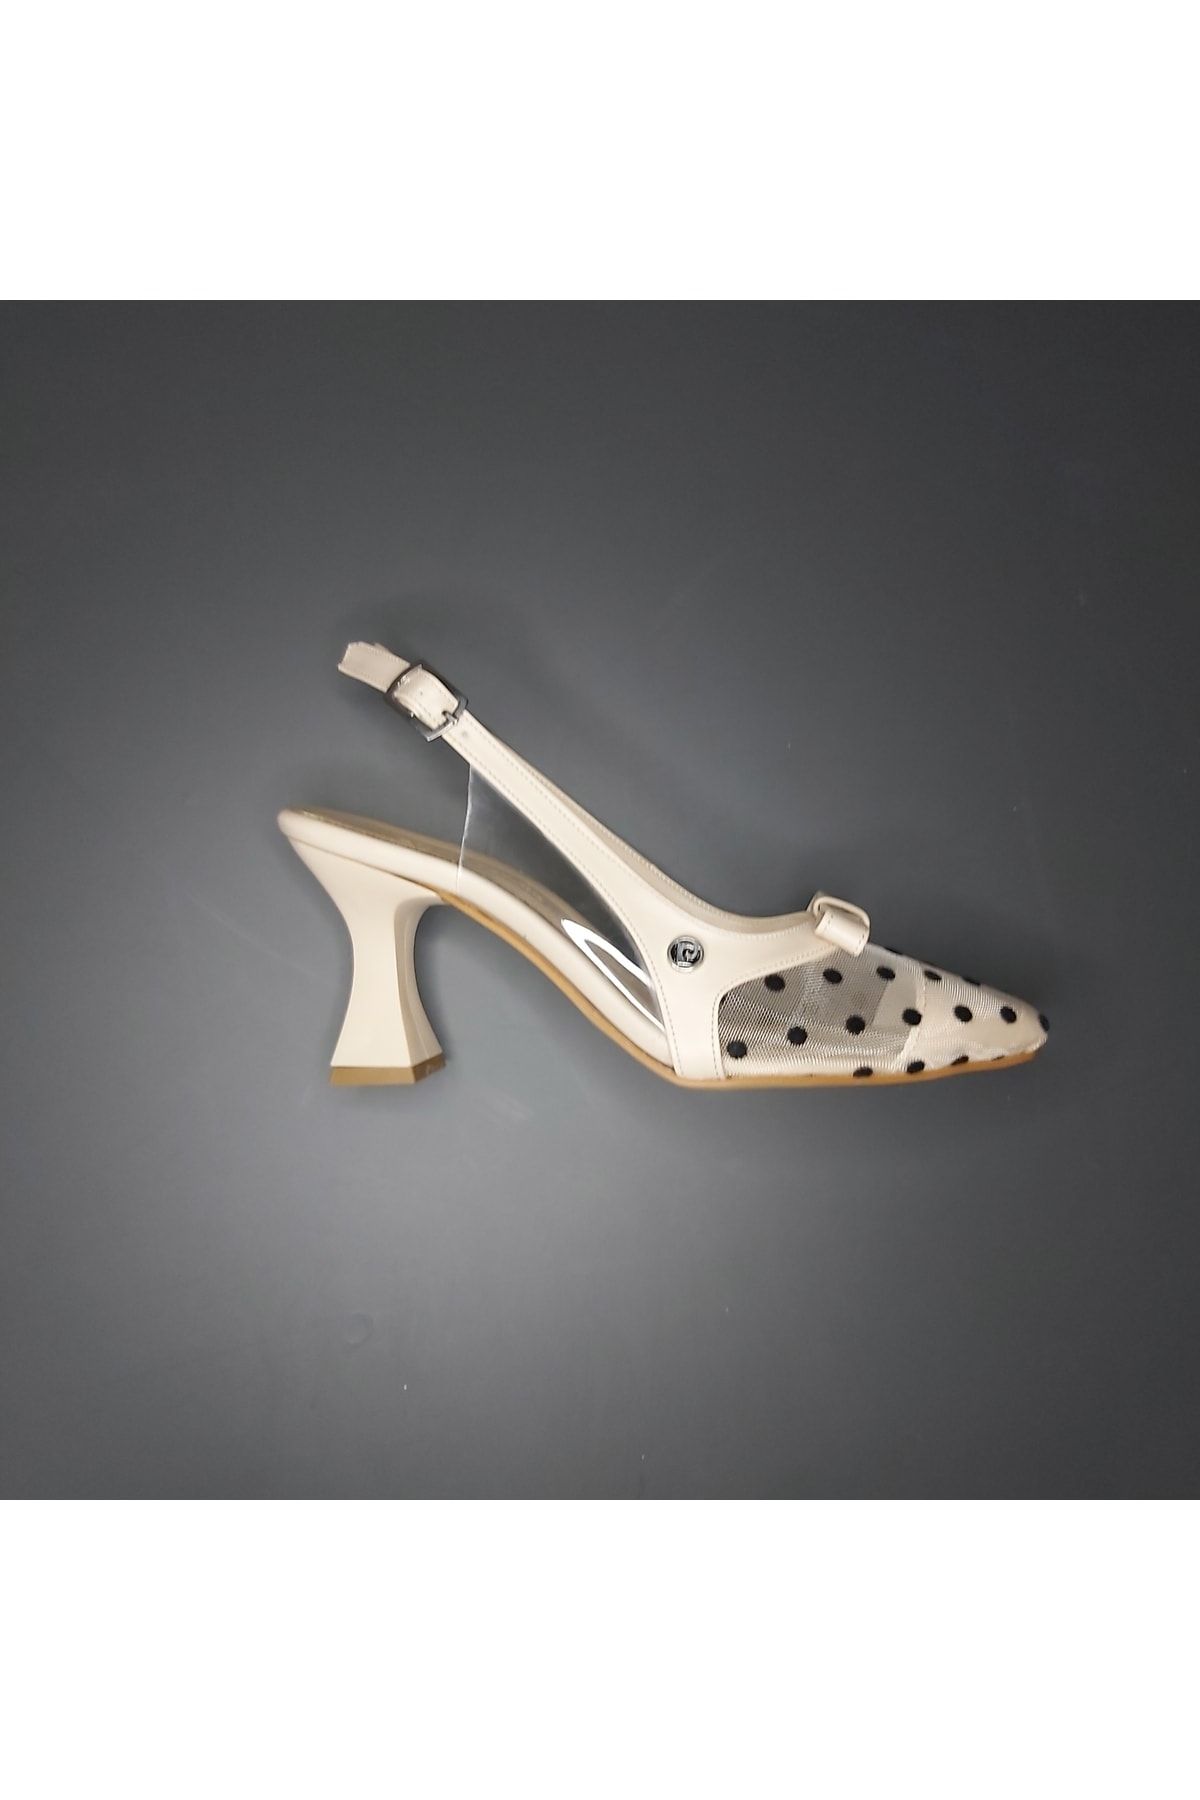 Pierre Cardin Fantezi Kadeh Topuklu Ayakkabı